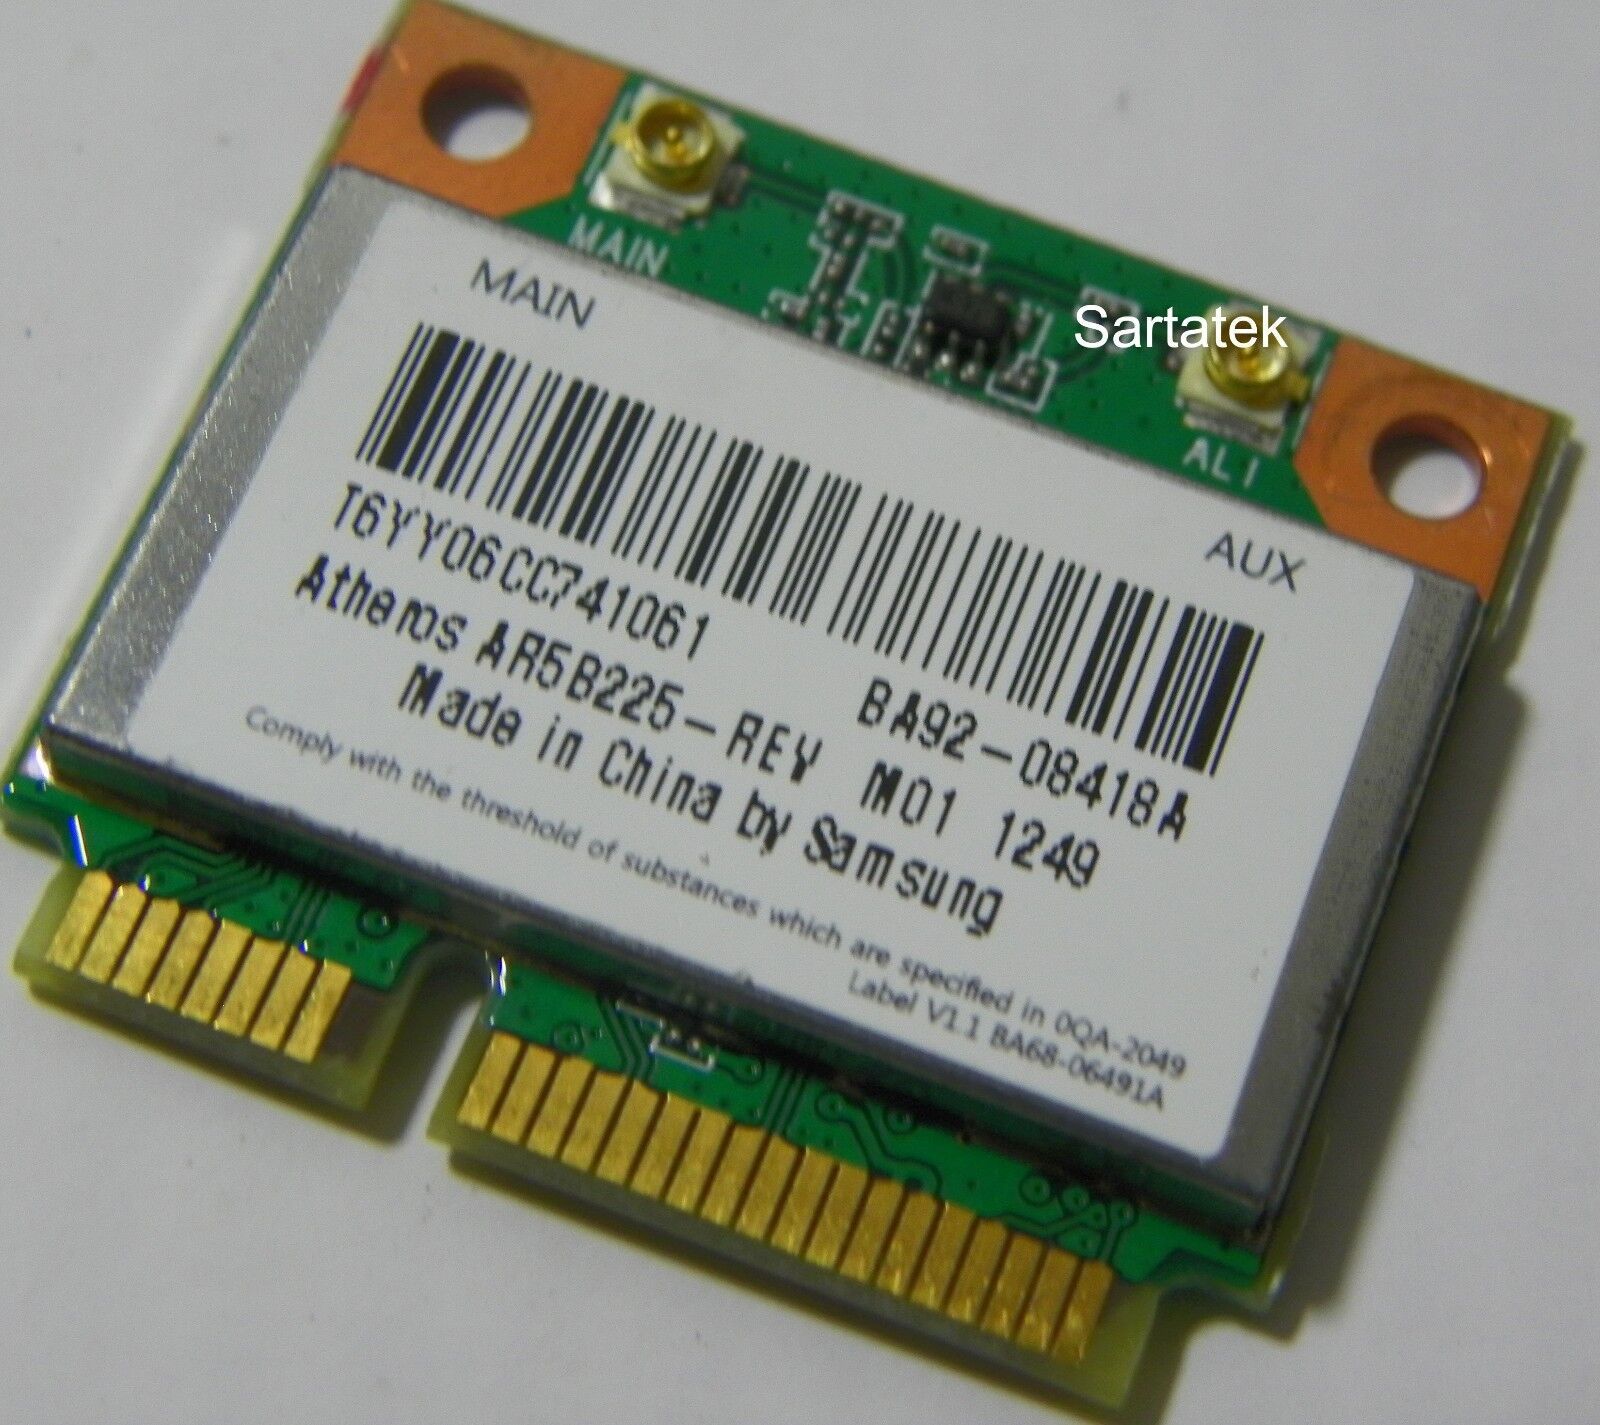 New OEM Samsung BA92-08418A b/g/n Wireless BT 4.0 PCIe Half Atheros AR5B225 - $31.34